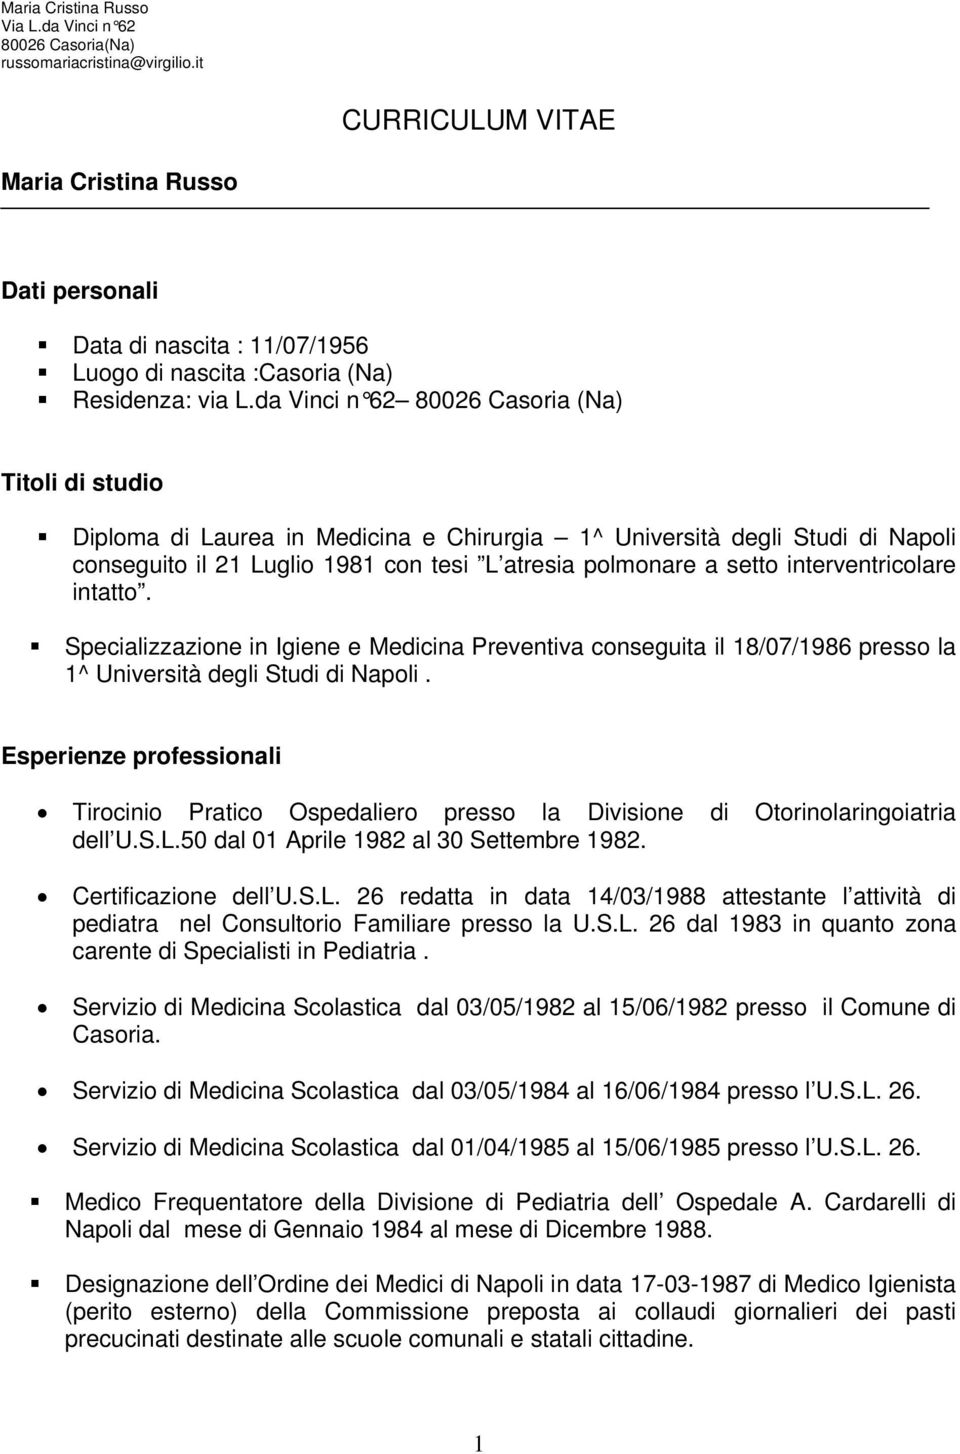 interventricolare intatto. Specializzazione in Igiene e Medicina Preventiva conseguita il 18/07/1986 presso la 1^ Università degli Studi di Napoli.